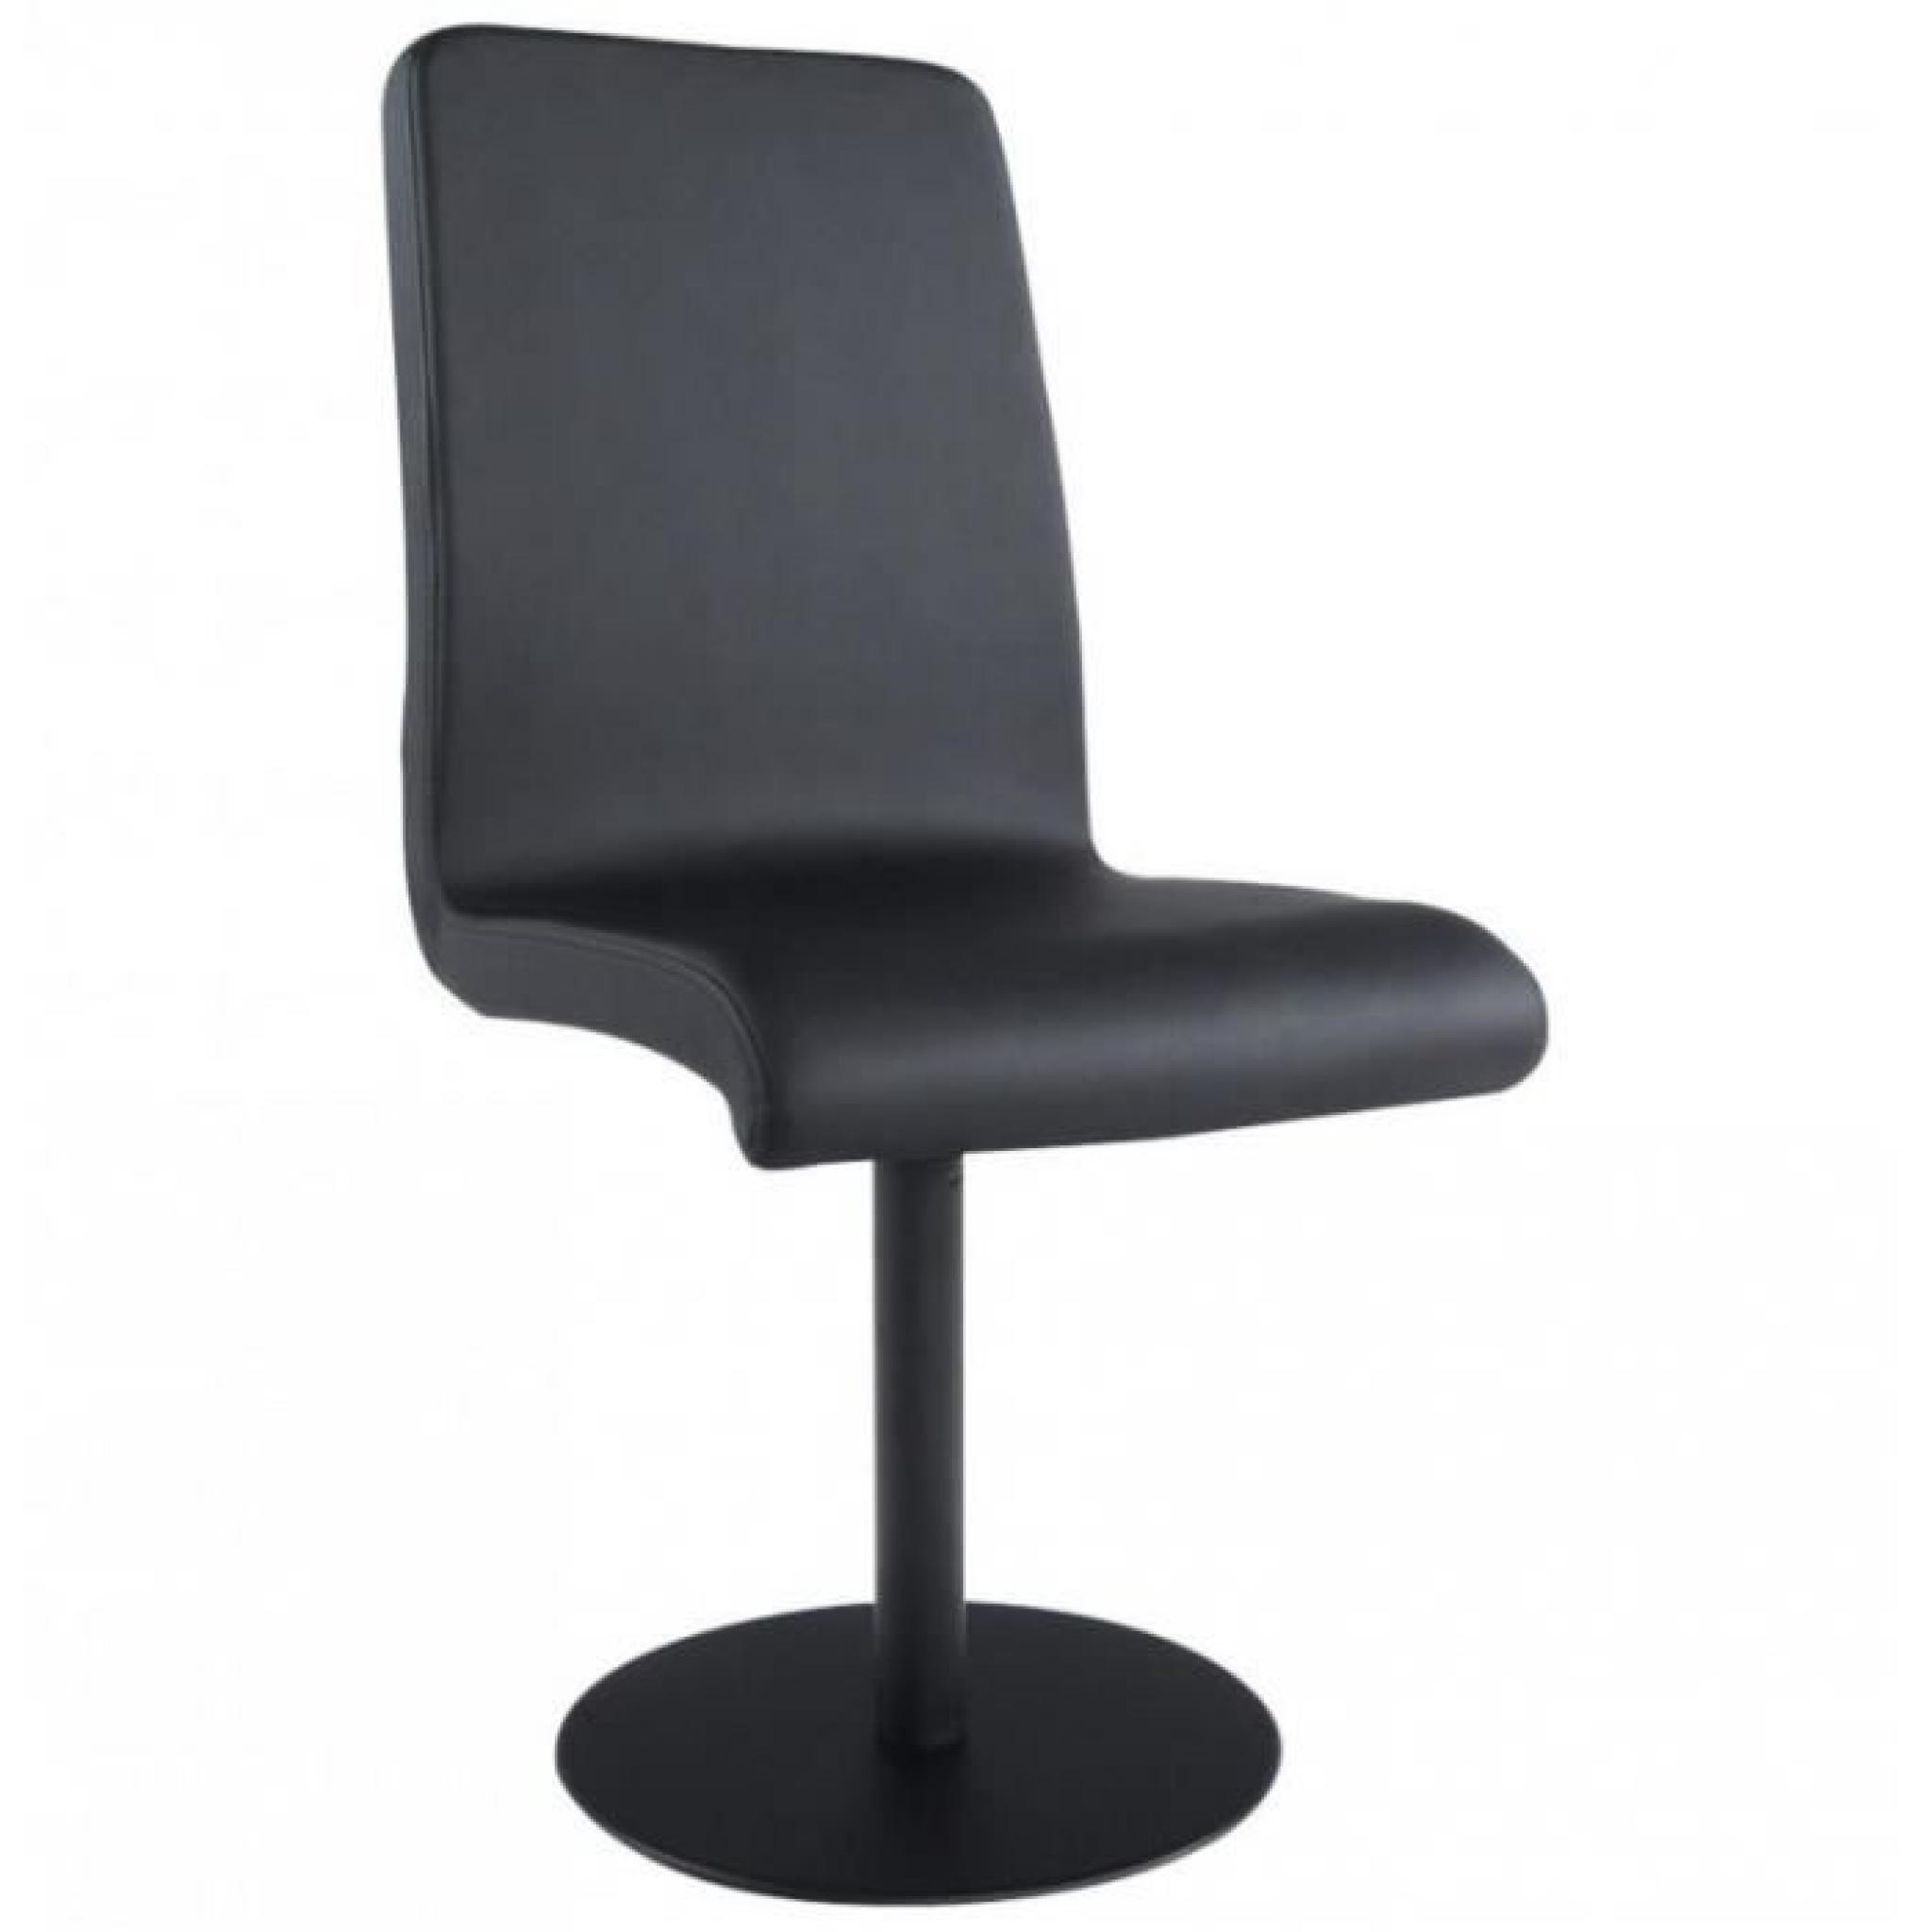 Chaise pivotante design en cuir synthétique Hope noire pas cher